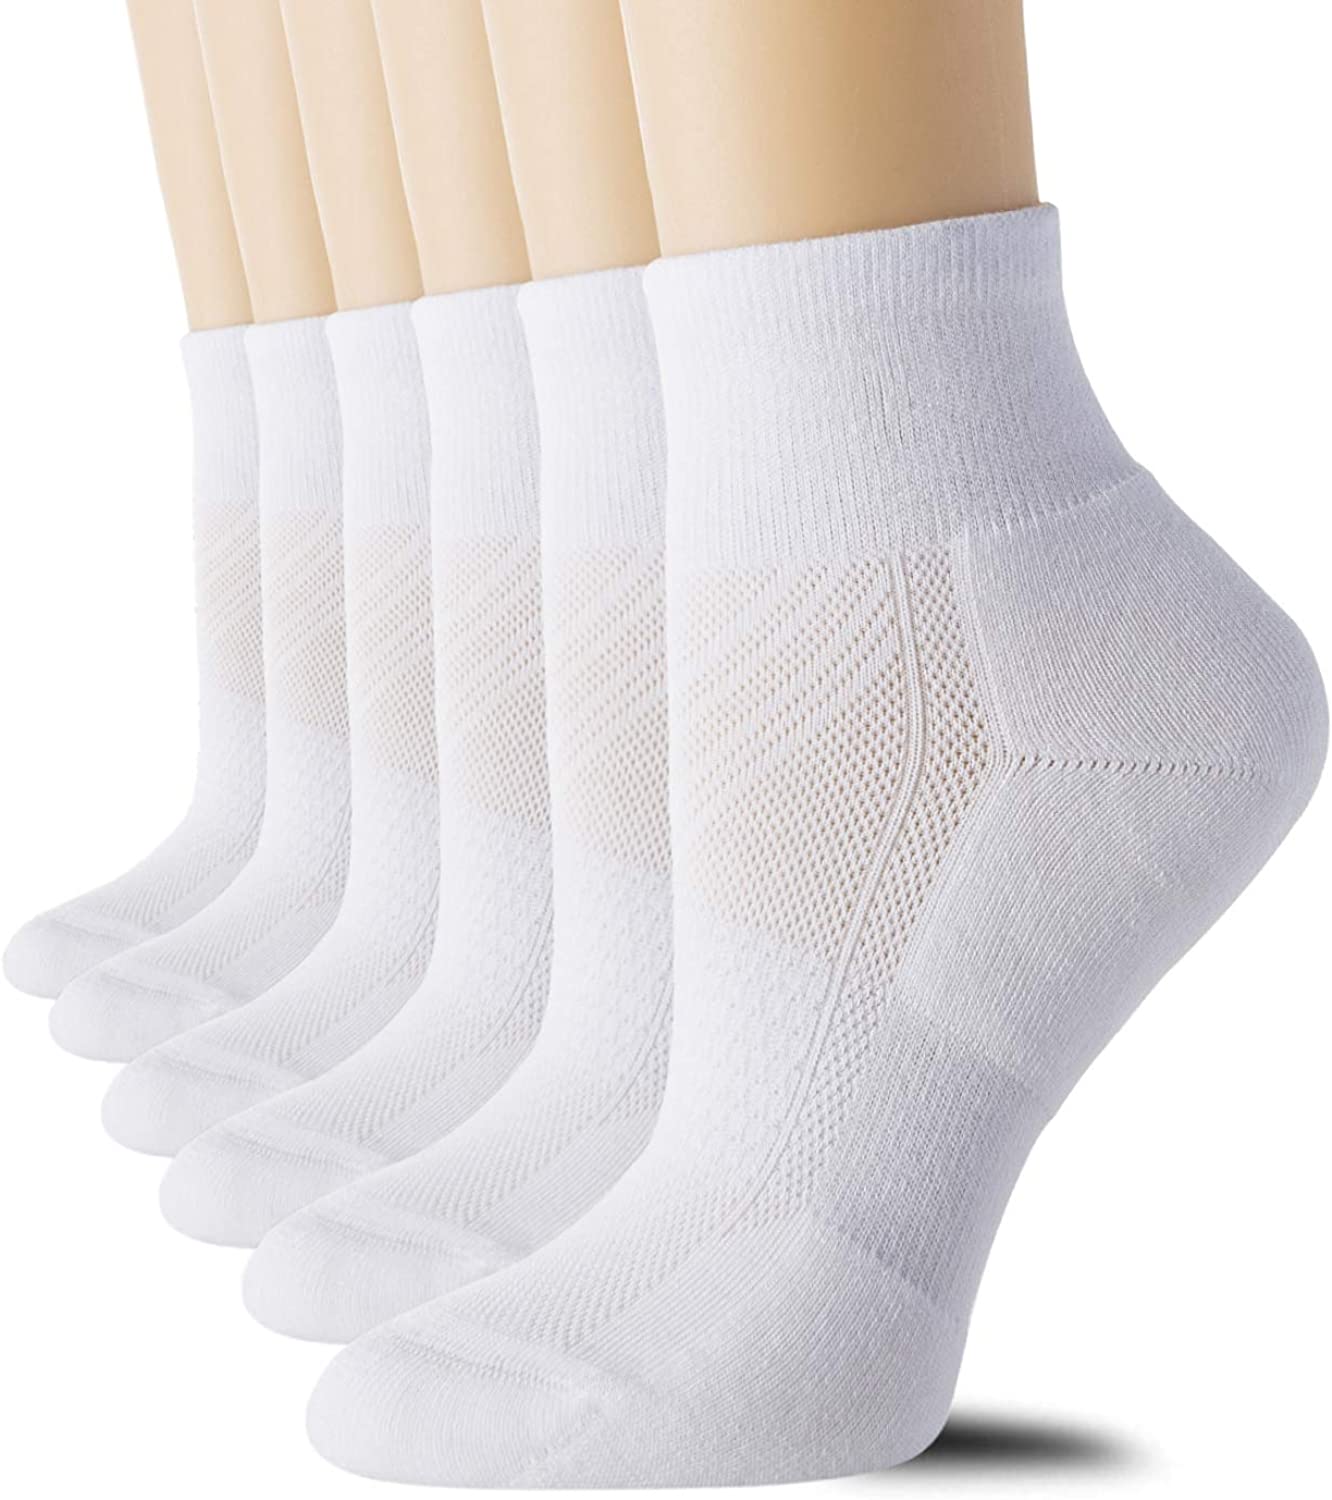 CS CELERSPORT 6 Pairs Women's Running Ankle Socks Athletic Sport Socks  Cushioned | eBay